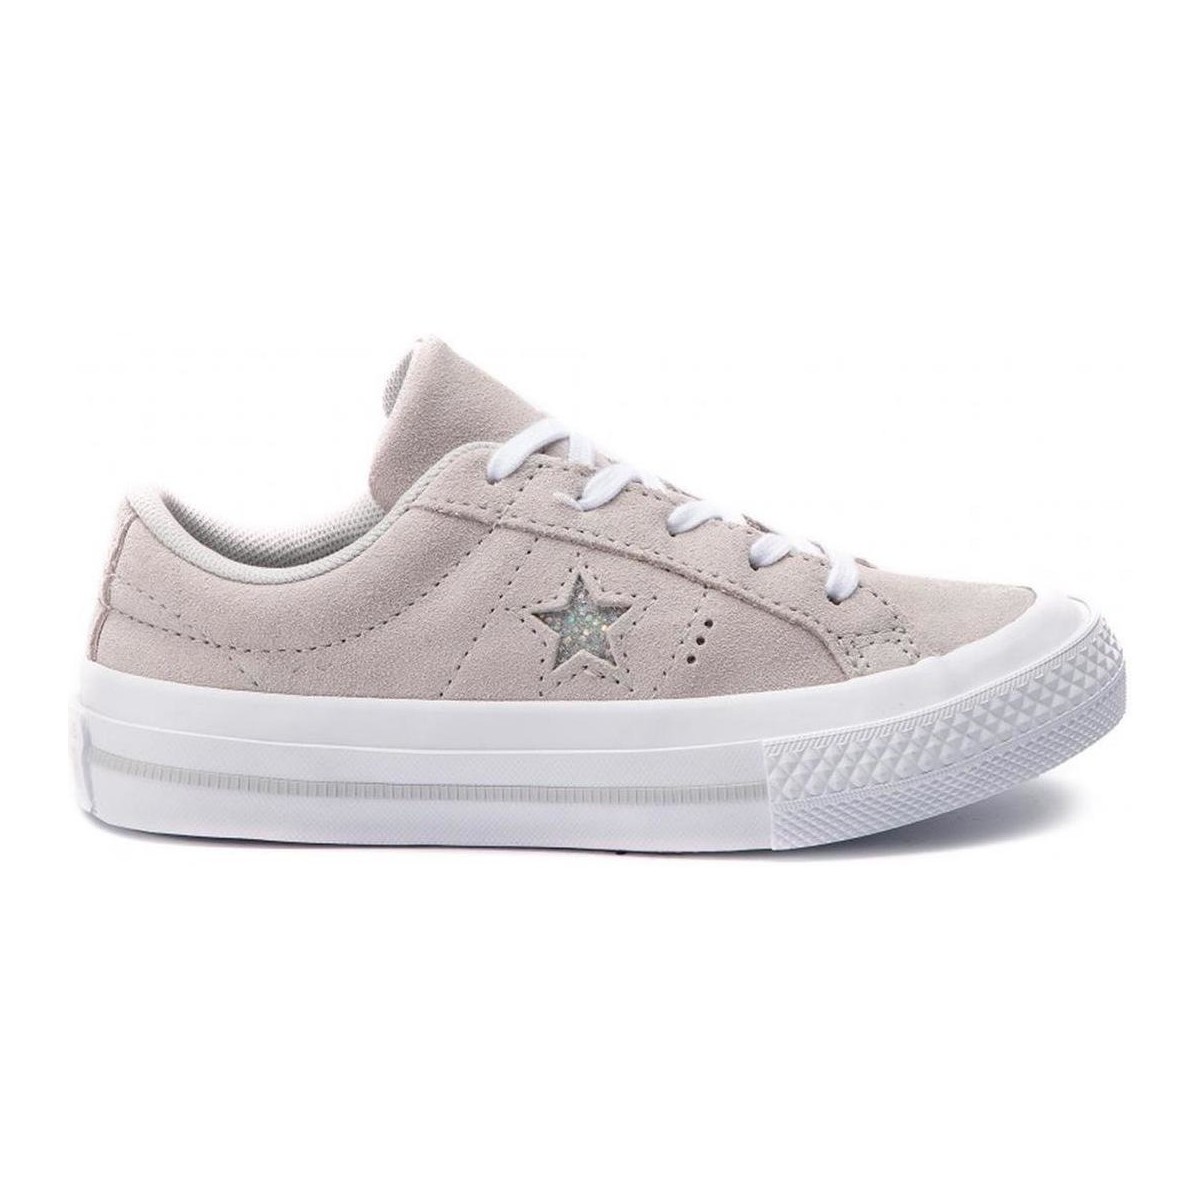 Pantofi Fete Sneakers Converse ONE STAR OX Bej